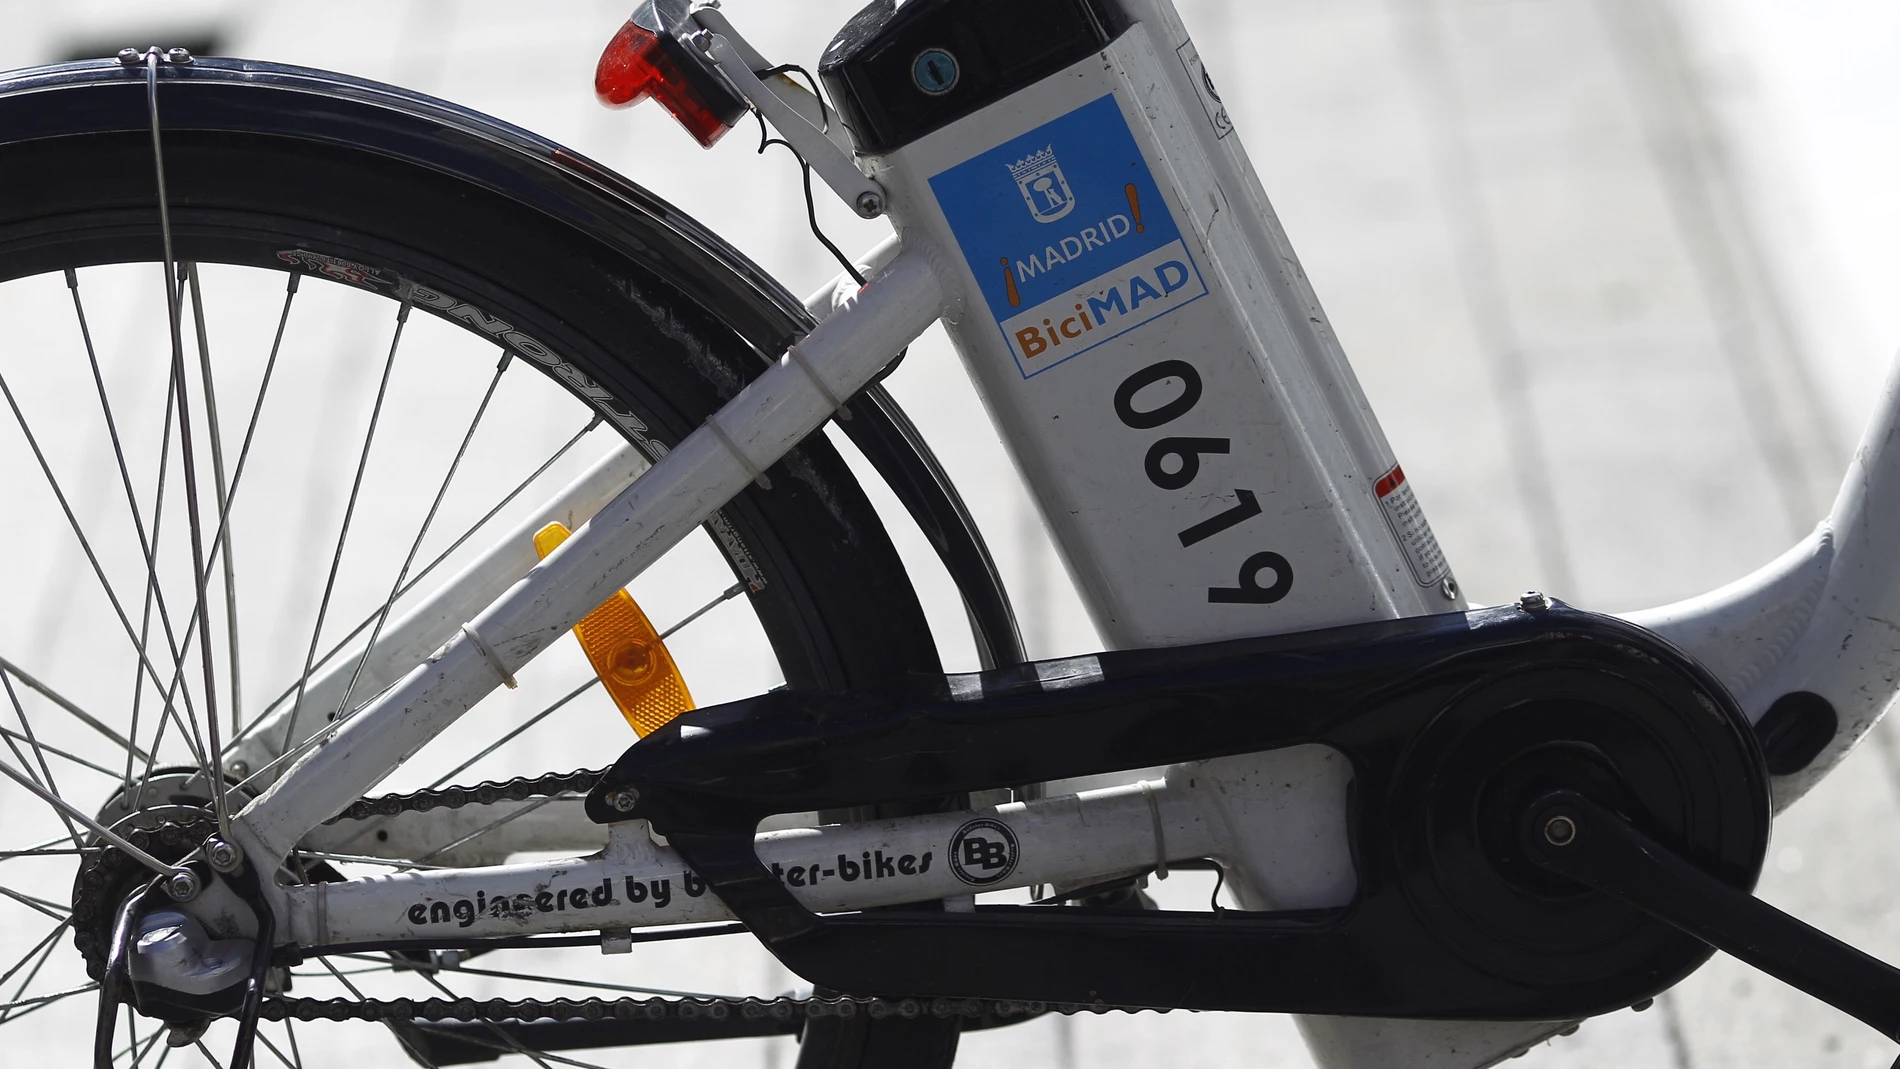 El Ayuntamiento denuncia una posible estafa a través de códigos QR en algunas bicicletas de Bicimad